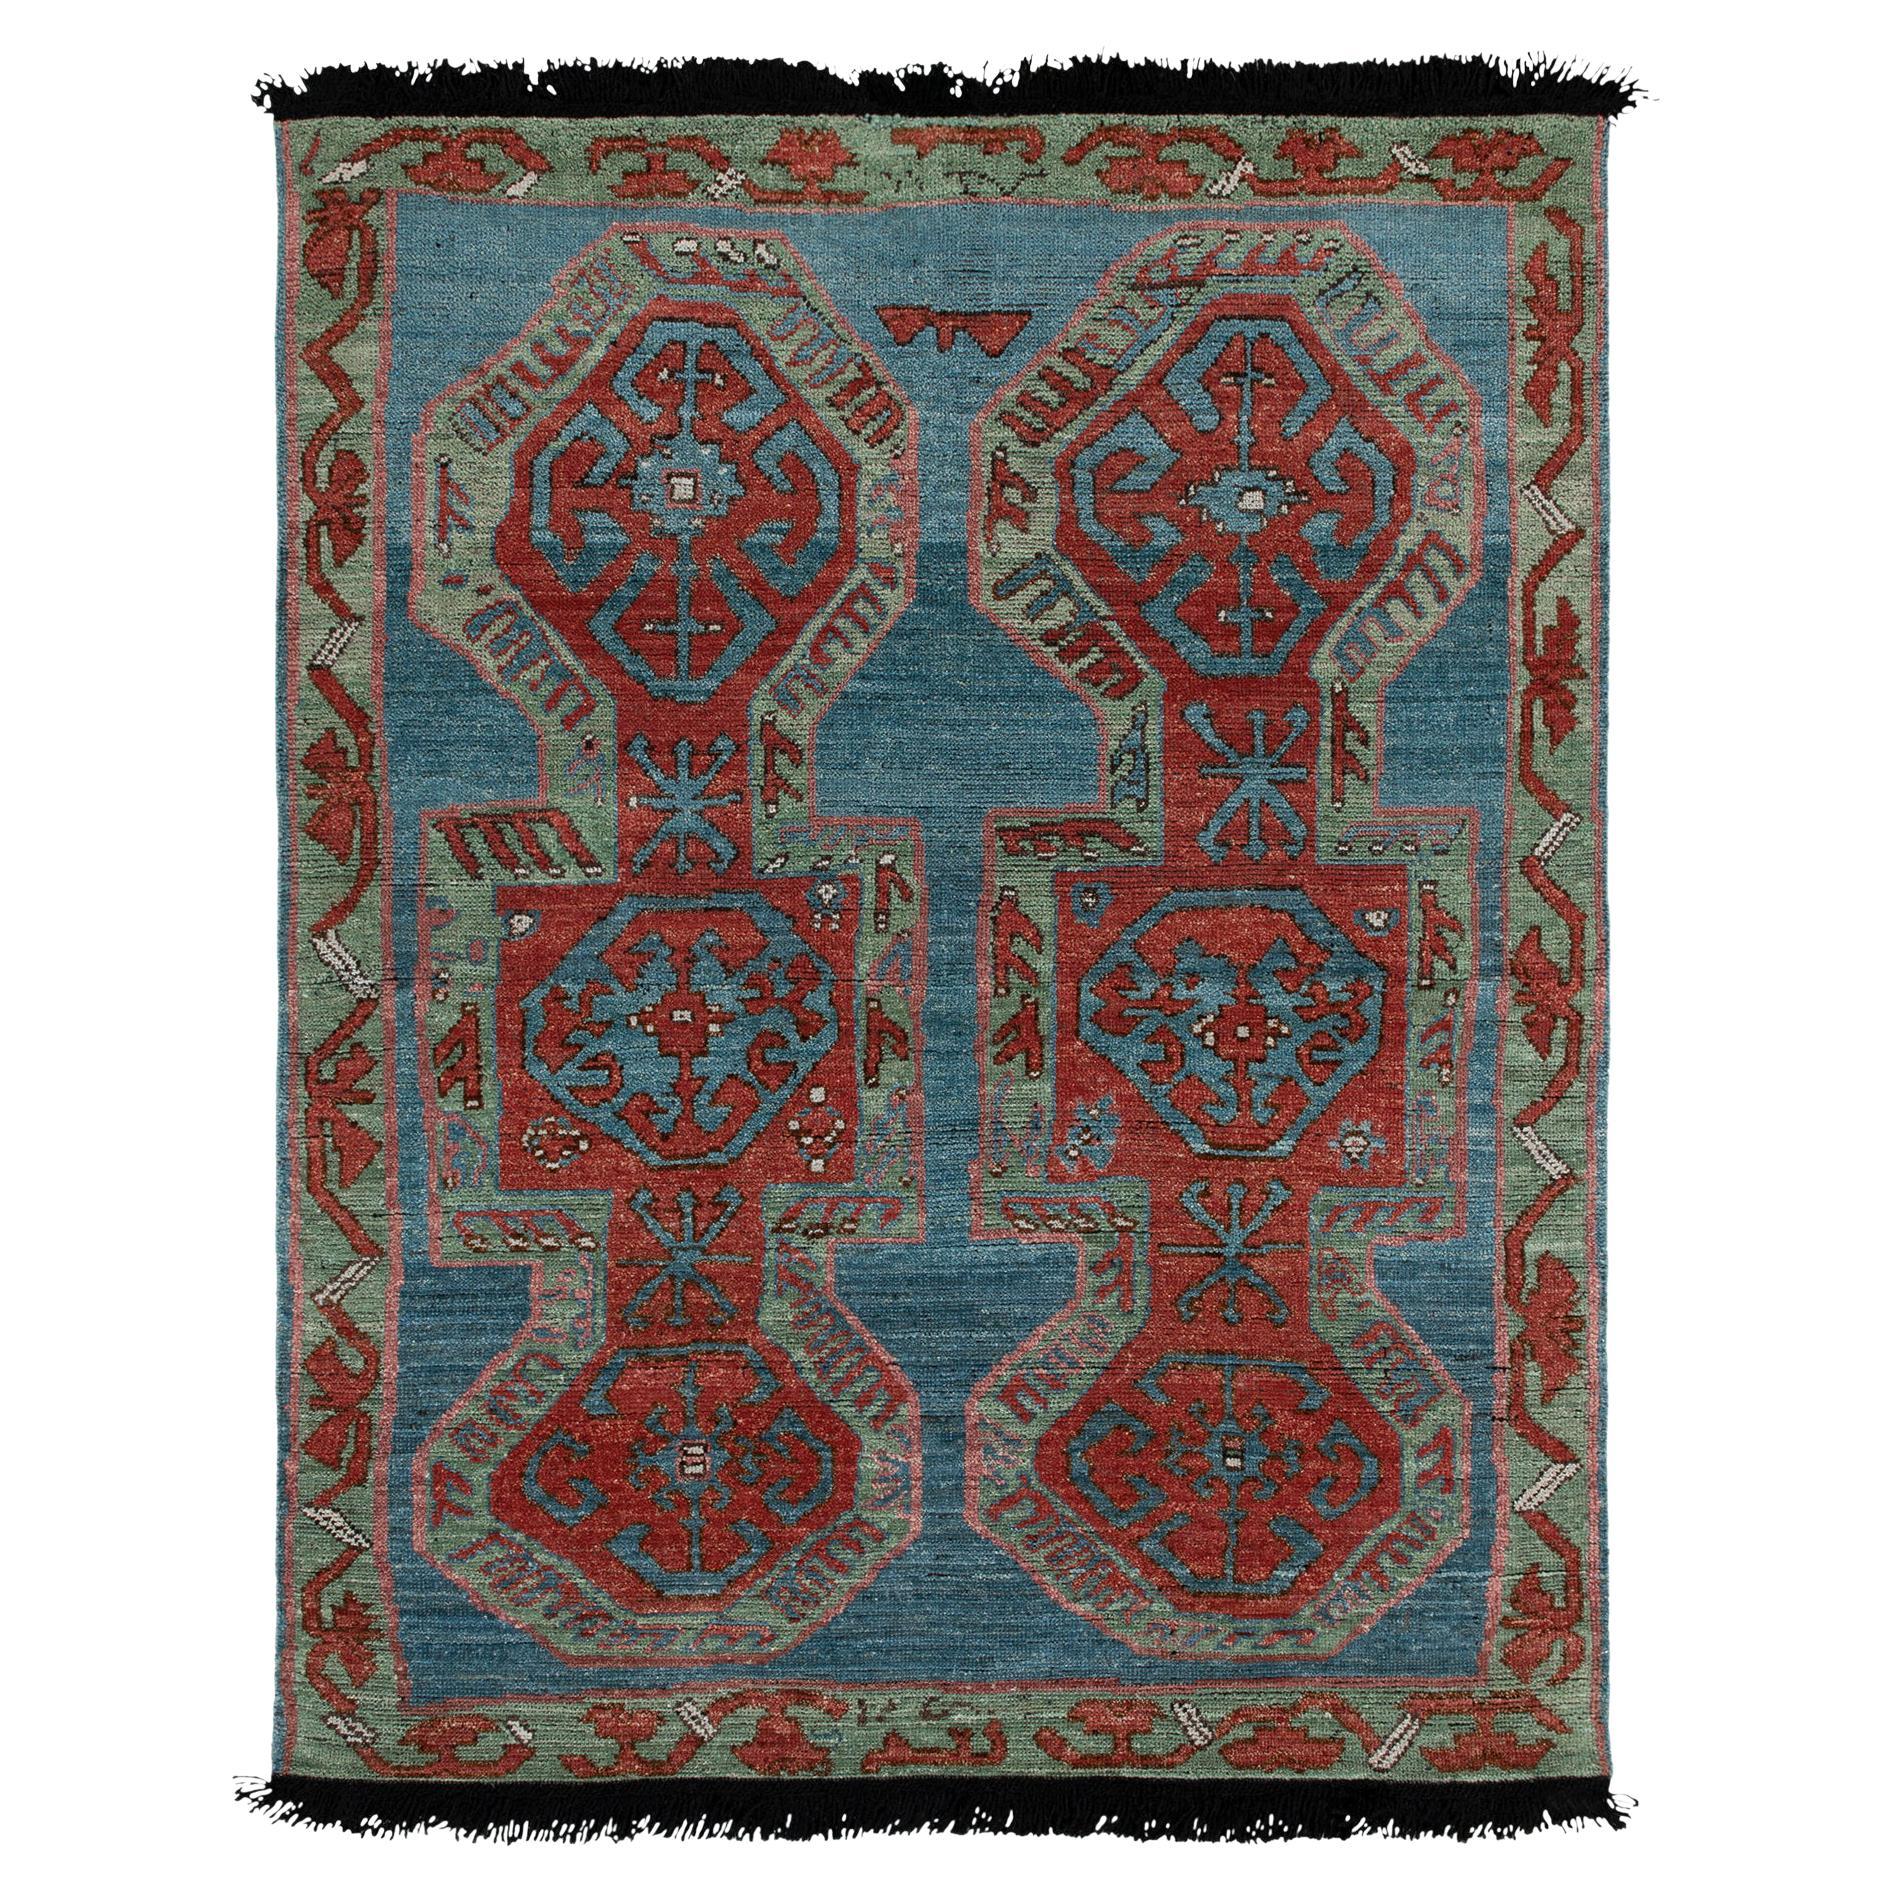 Tapis et tapis Kilim de style tribal à motifs géométriques rouges, bleus et verts